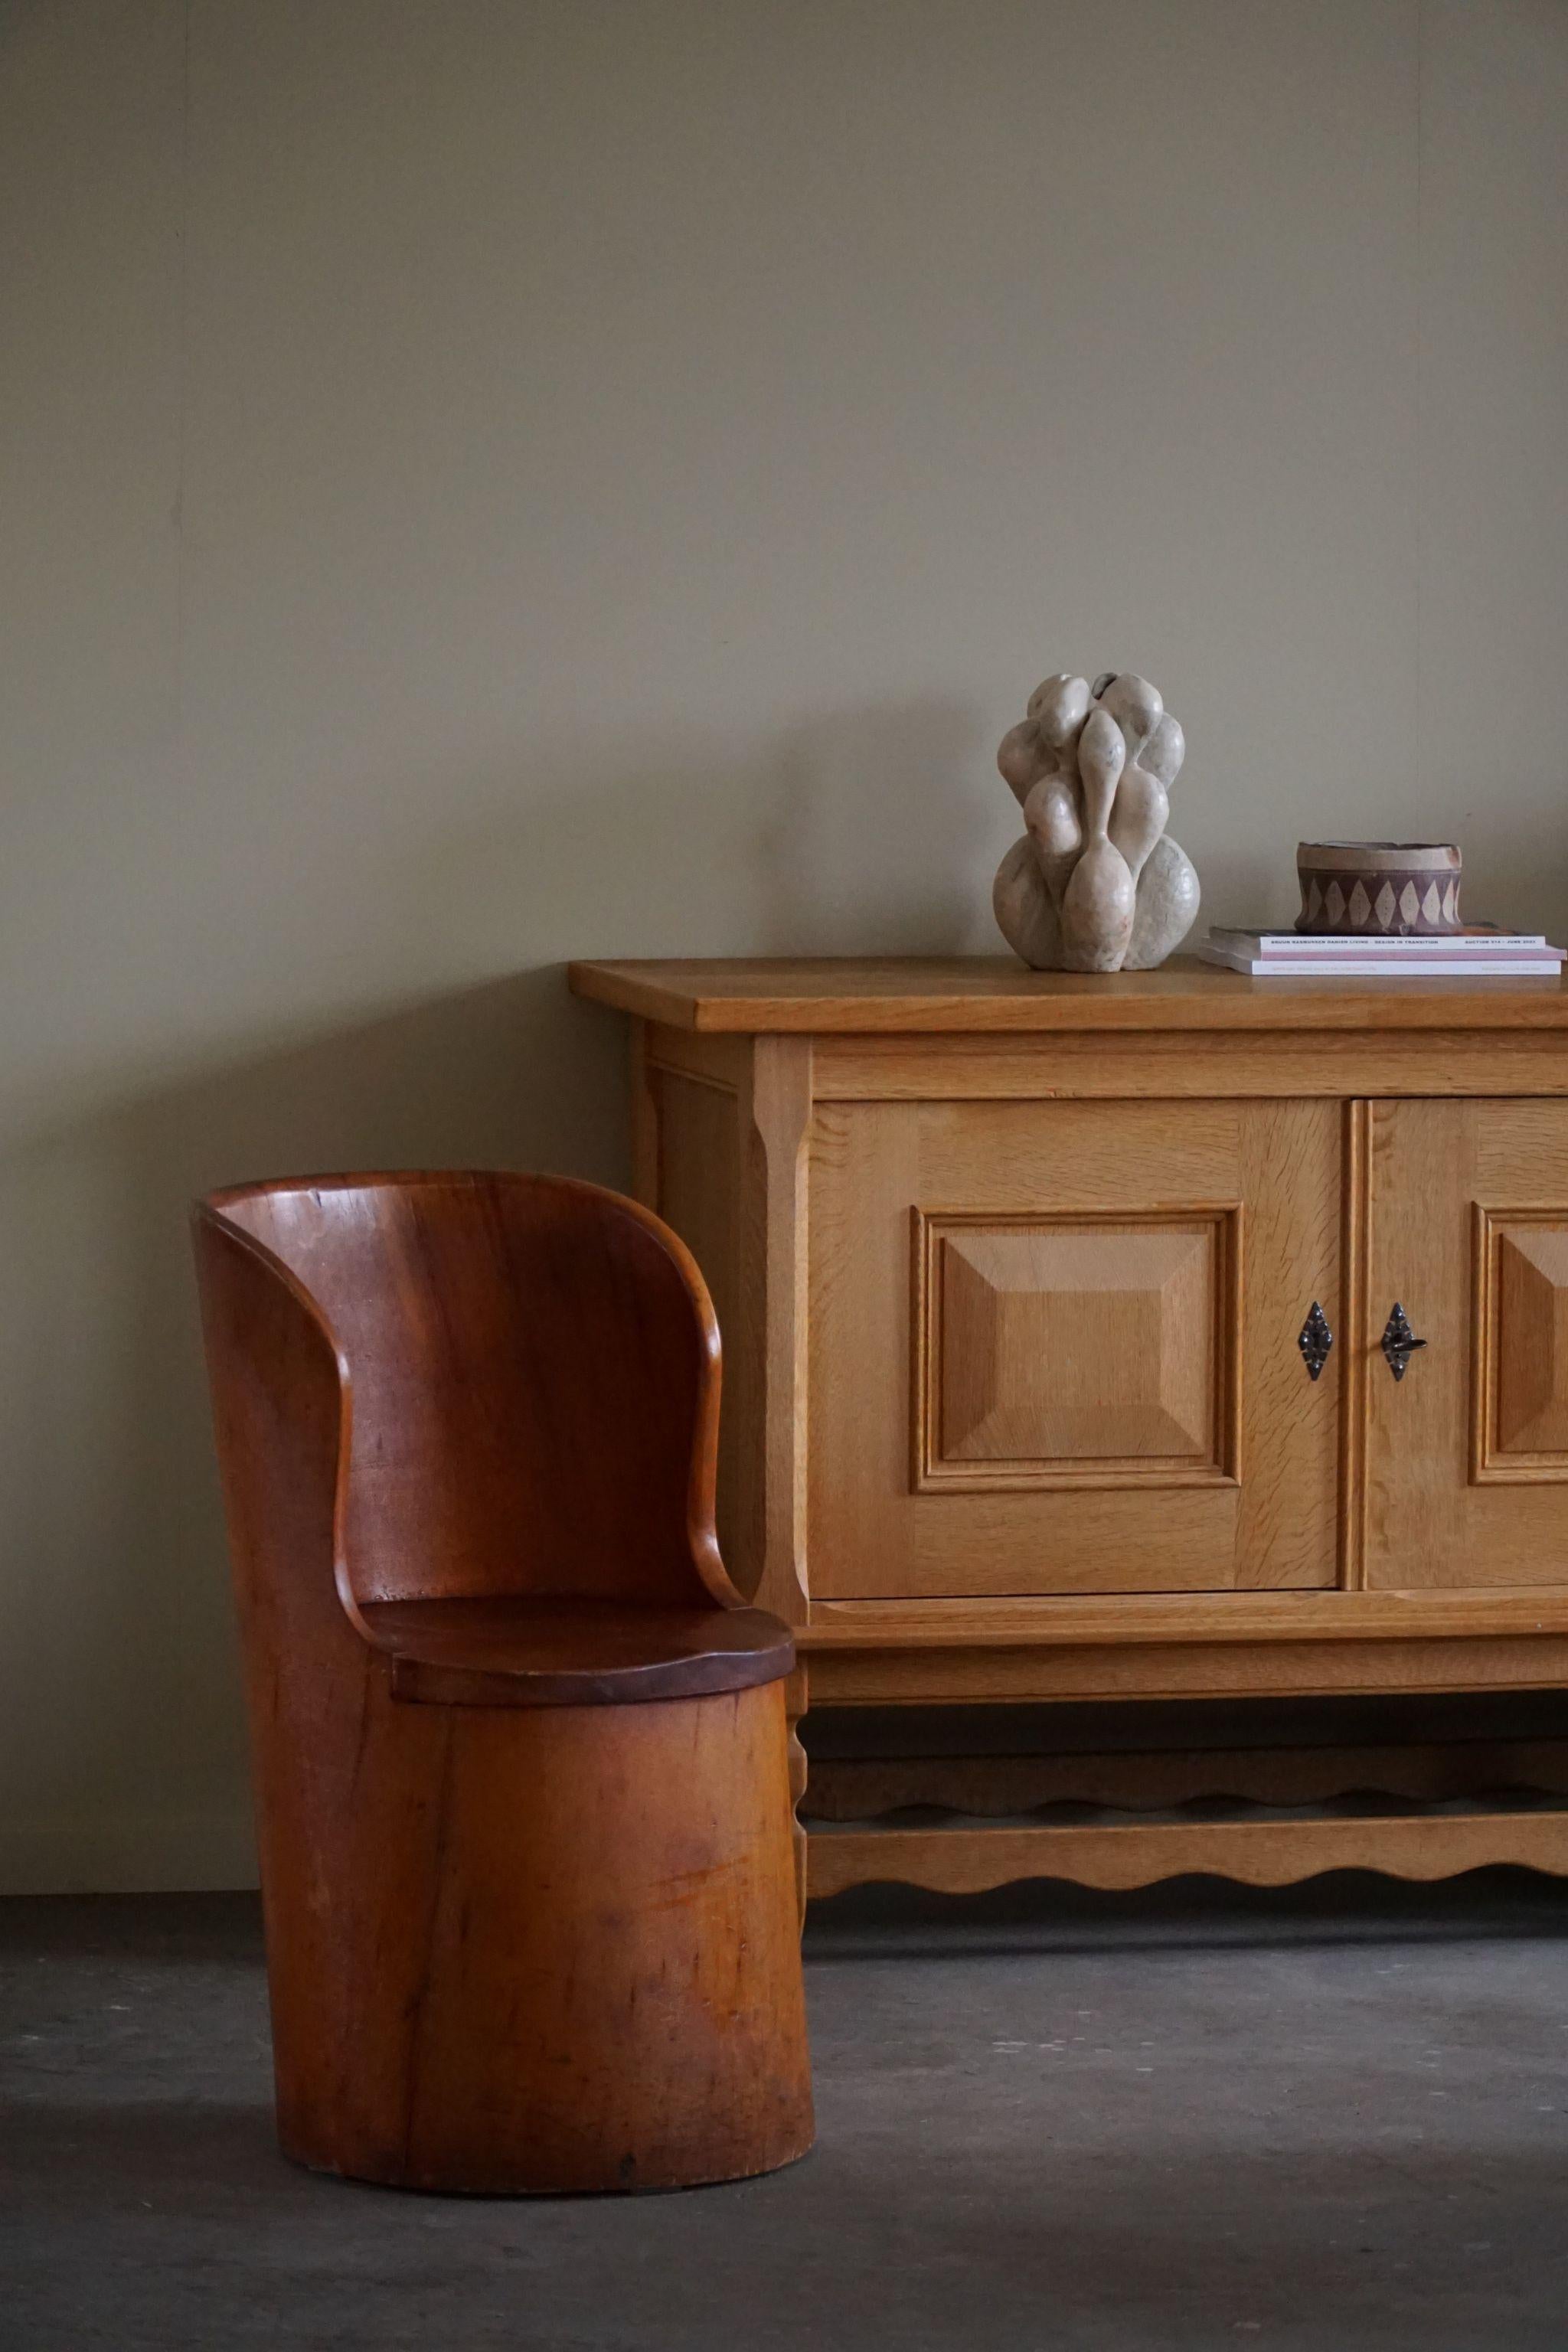 Ein charmanter primitiver Stumpfstuhl aus massivem Kiefernholz. Handgeschnitzt von einem unbekannten schwedischen Tischler in den 1960er Jahren. Ein schönes Wabi-Sabi-Stück für die moderne Einrichtung.

Dieser ansprechende Stuhl passt in viele